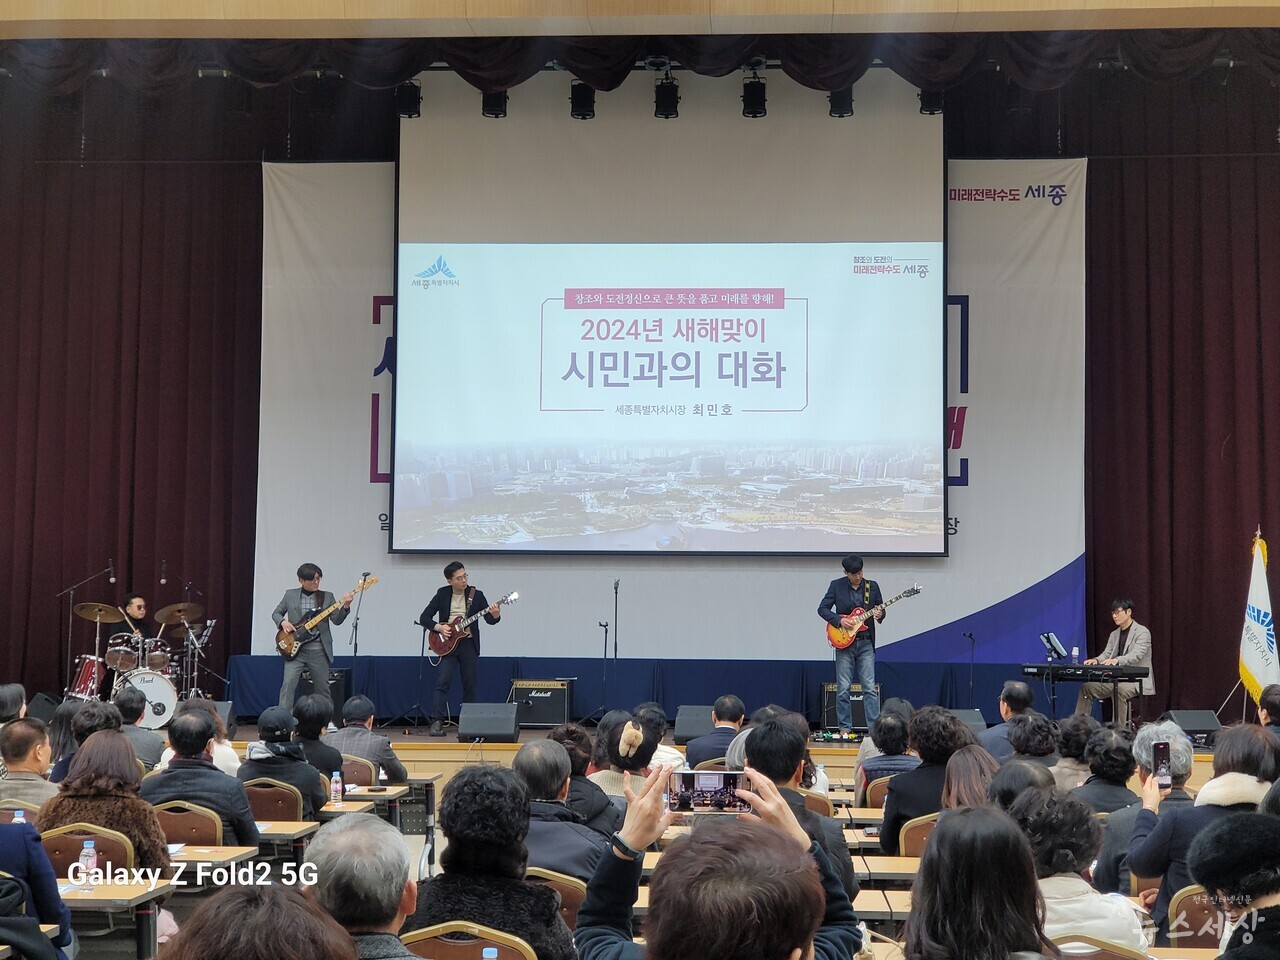 '시민과의 대화' 식전행사로 진행된 공무원밴드 '허니블루' 음악 동호회의 공연 모습